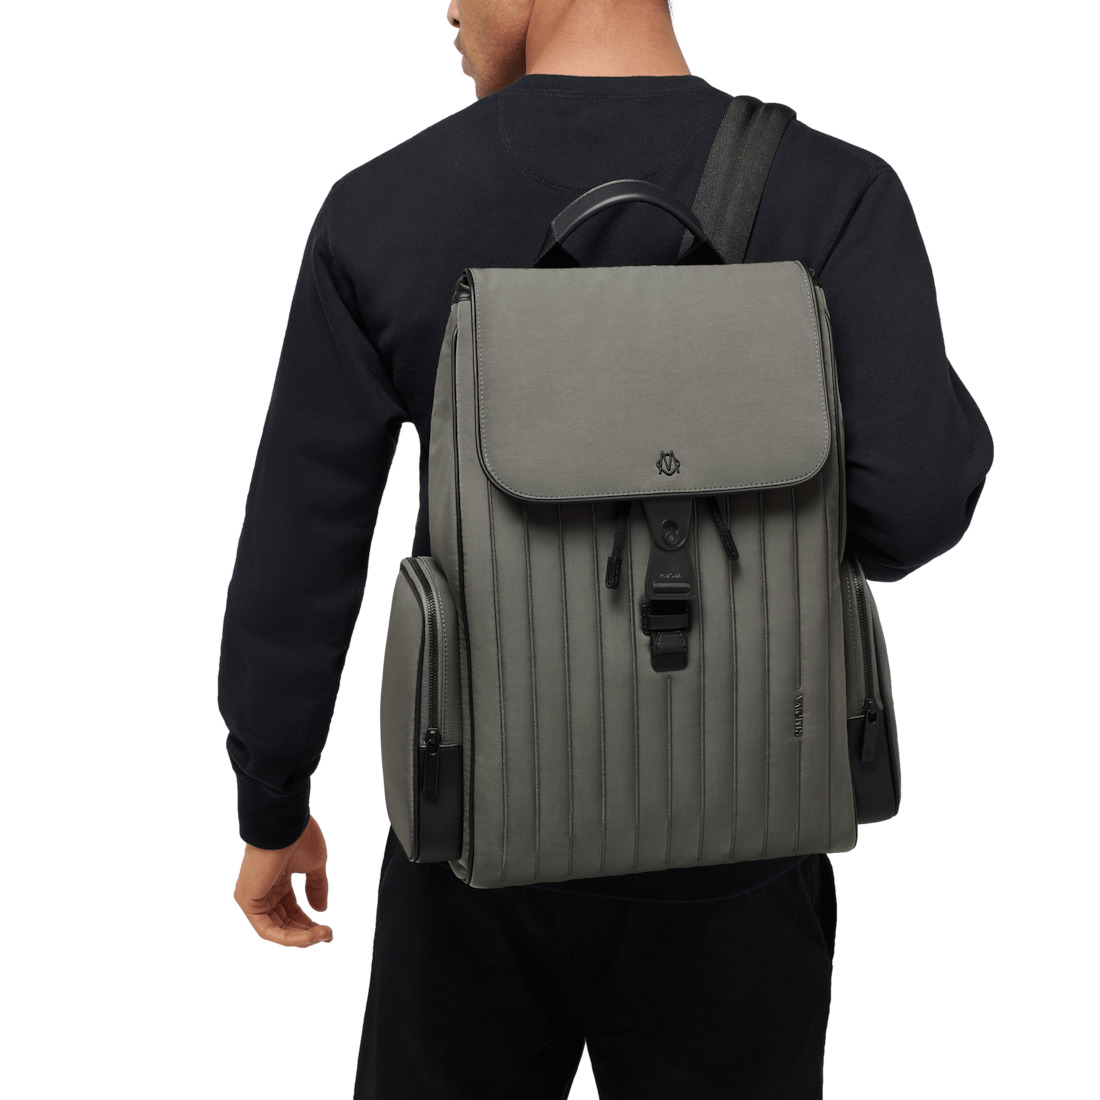 Never Still - Nylon Flap Backpack Large - 7